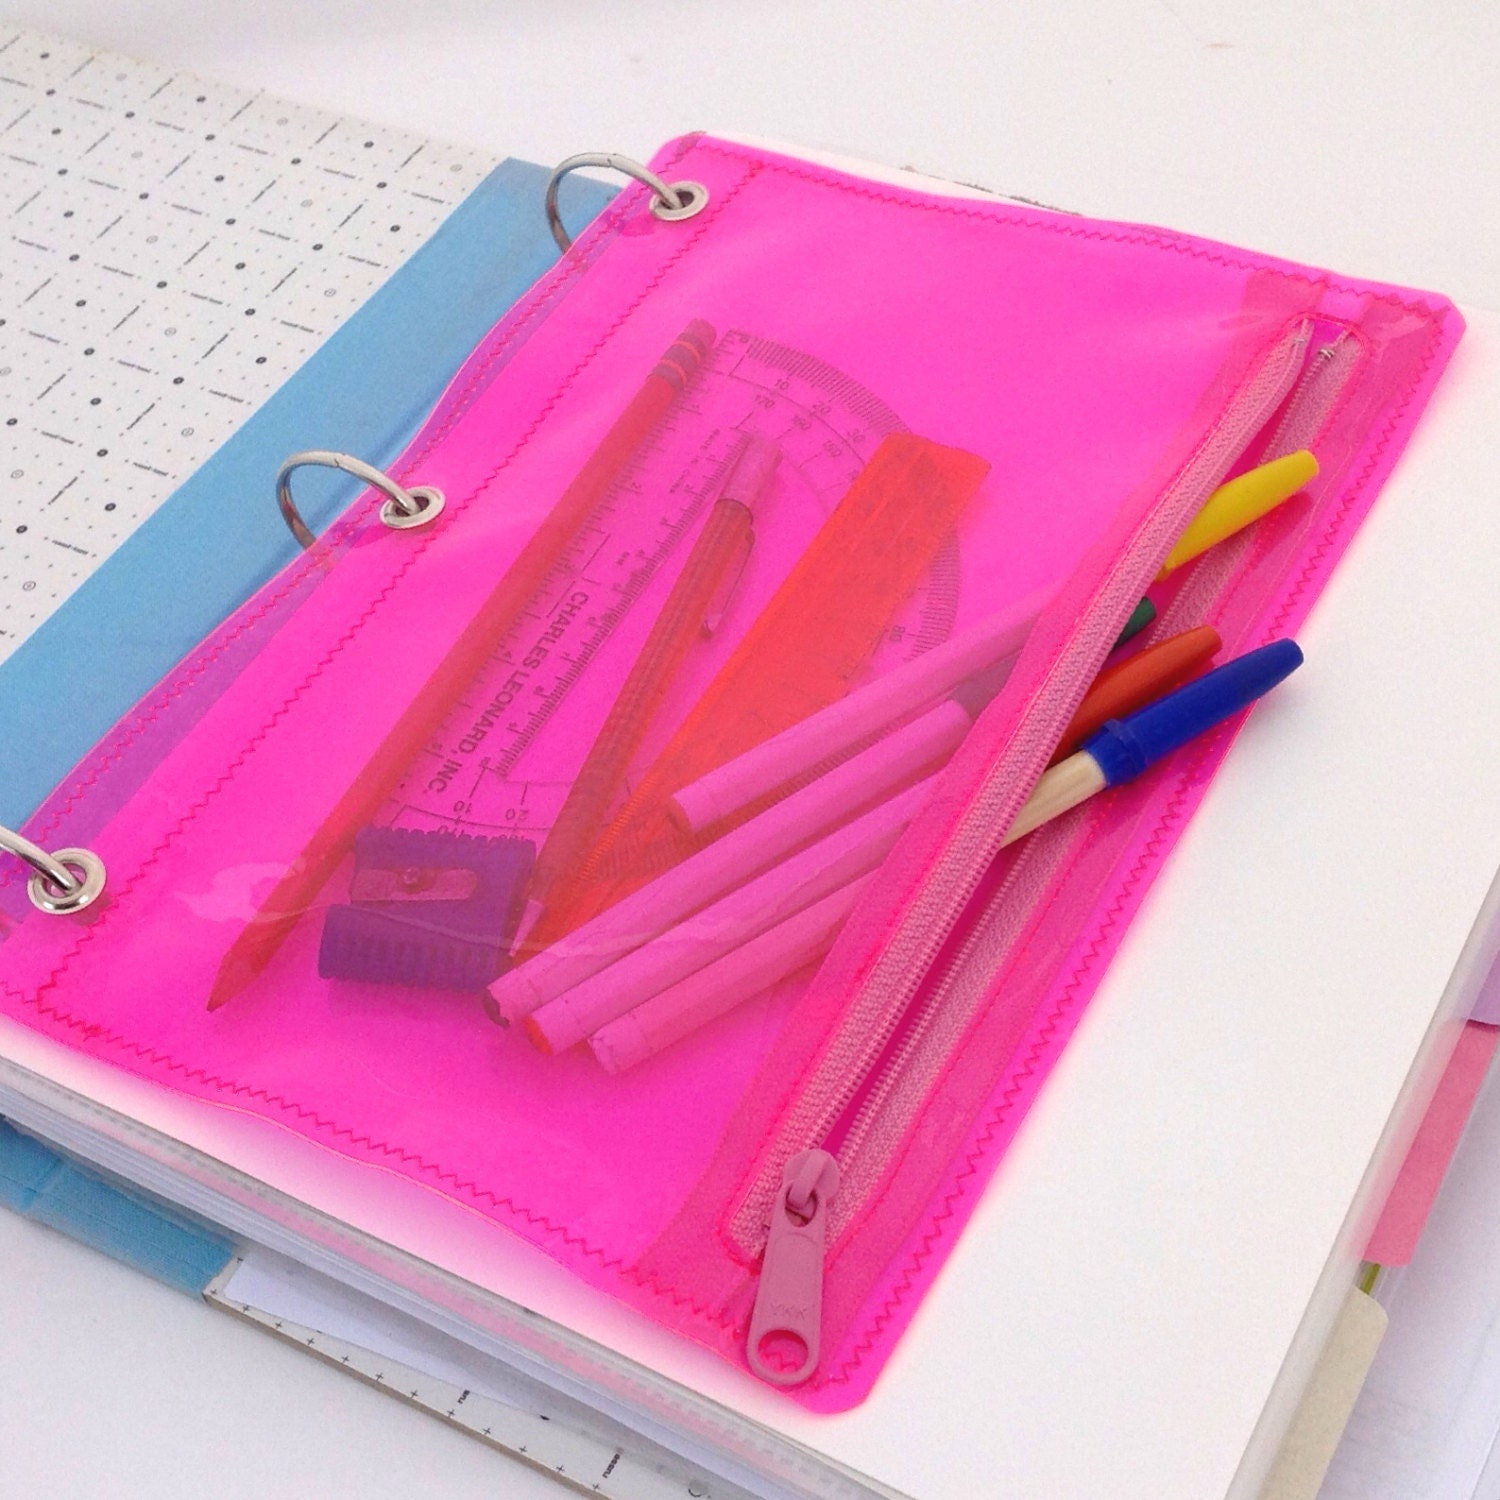 pink pencil holder